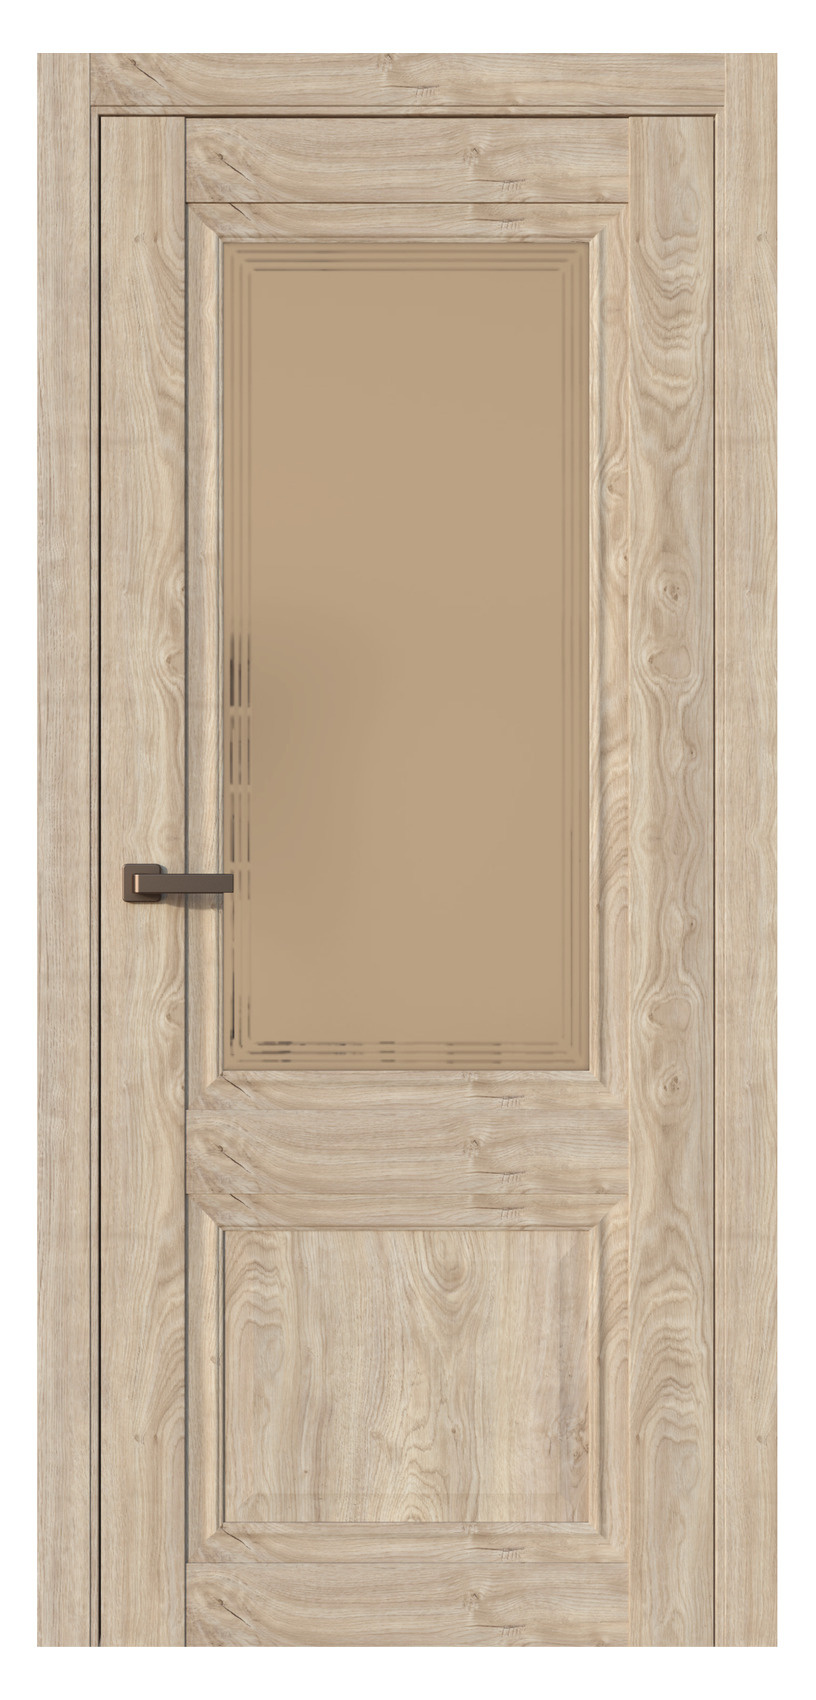 Questdoors Межкомнатная дверь QH2, арт. 17530 - фото №1